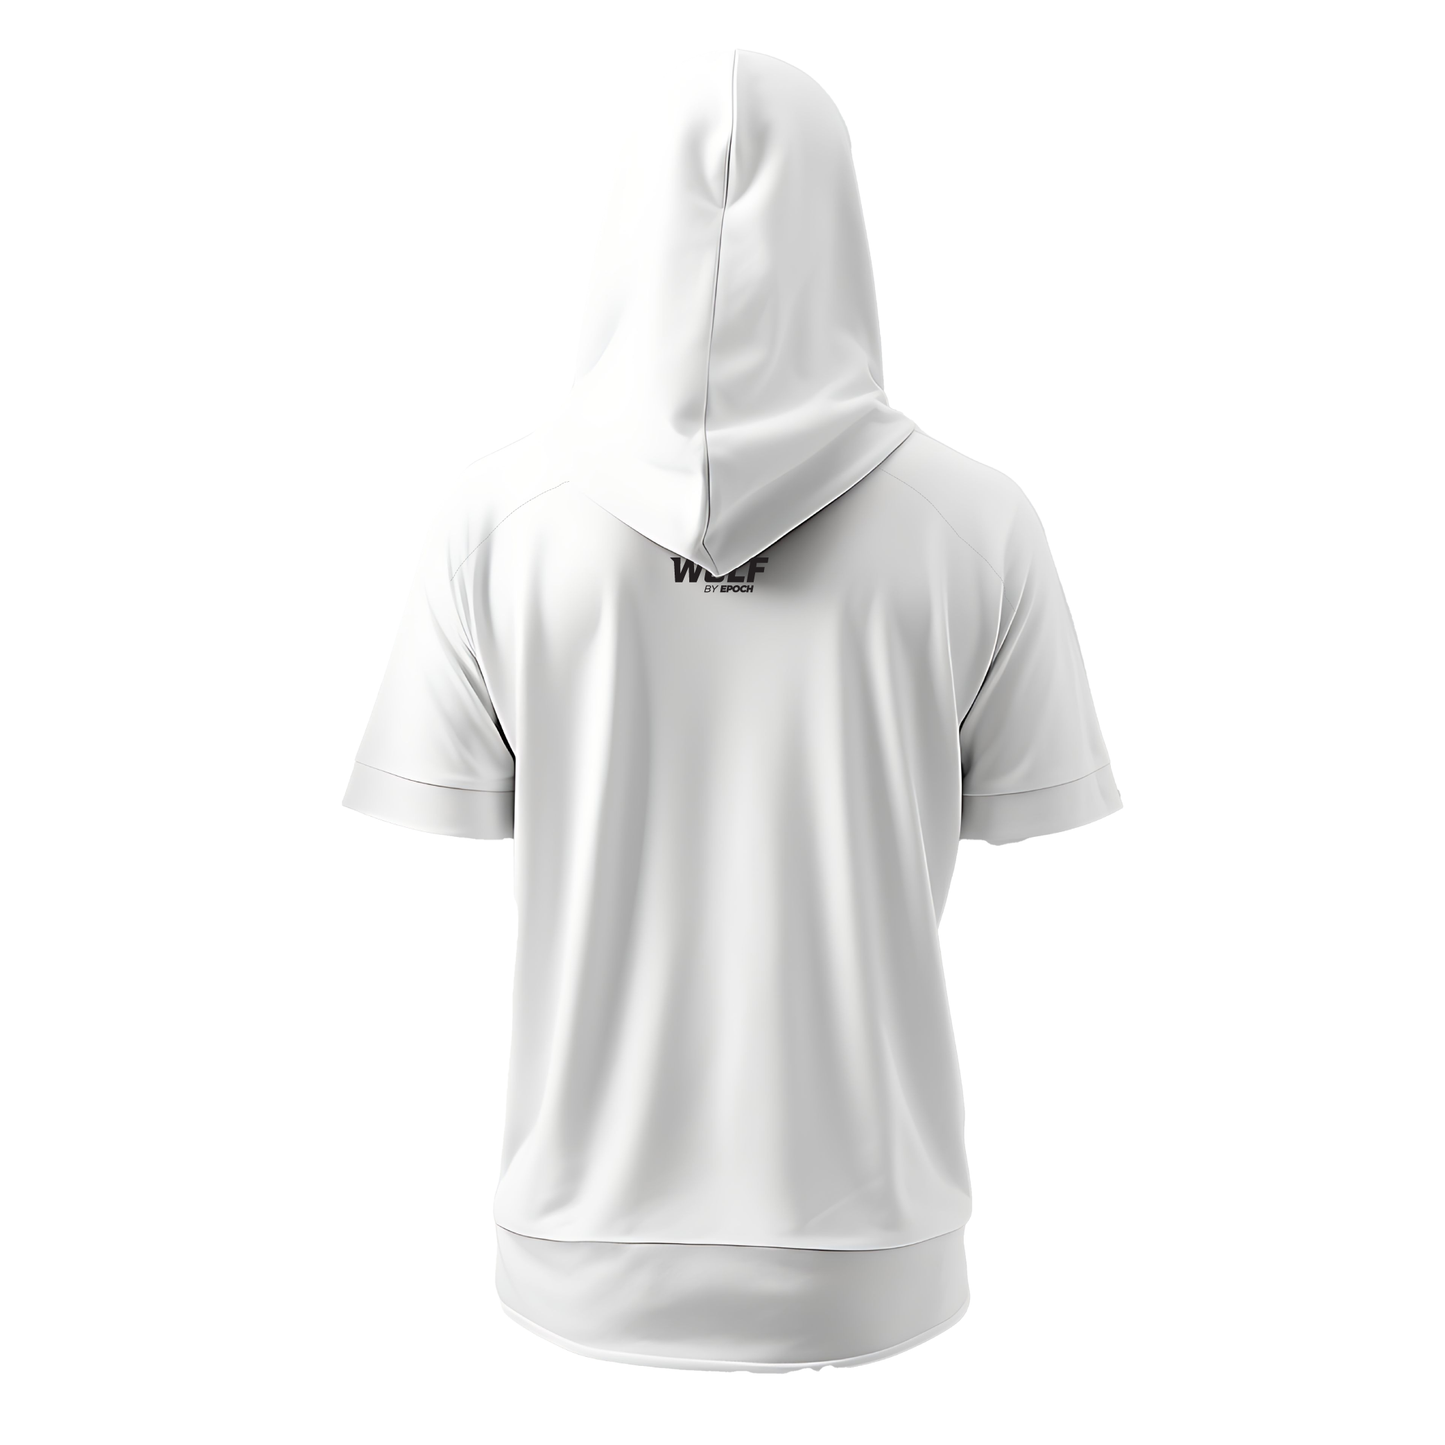 Wolf Athletics - Premium Unisex Short Sleeve Hooded Sweatshirt White